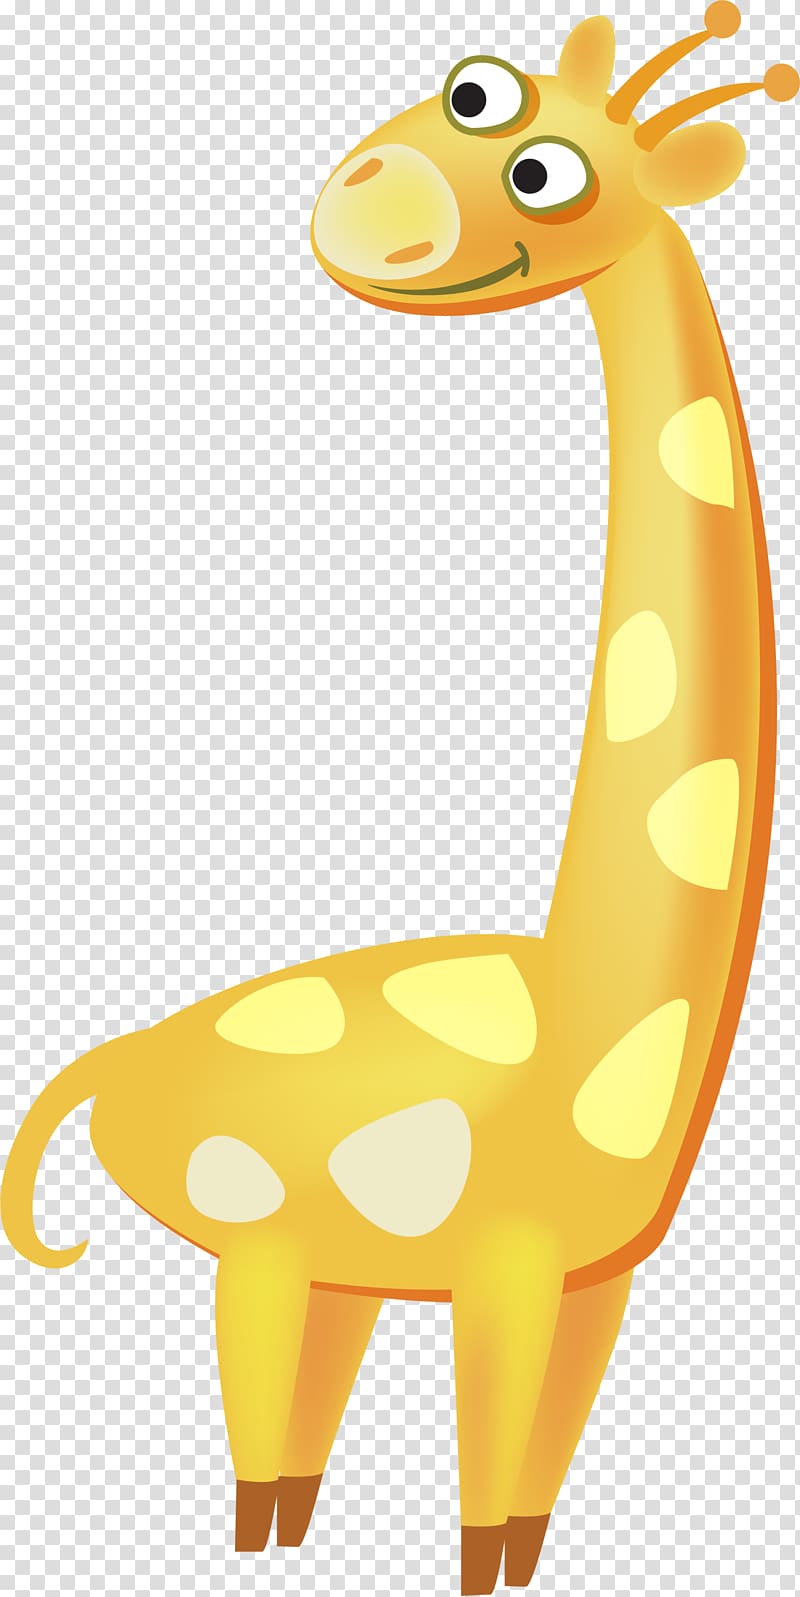 Northern giraffe , Yellow Giraffe transparent background PNG clipart